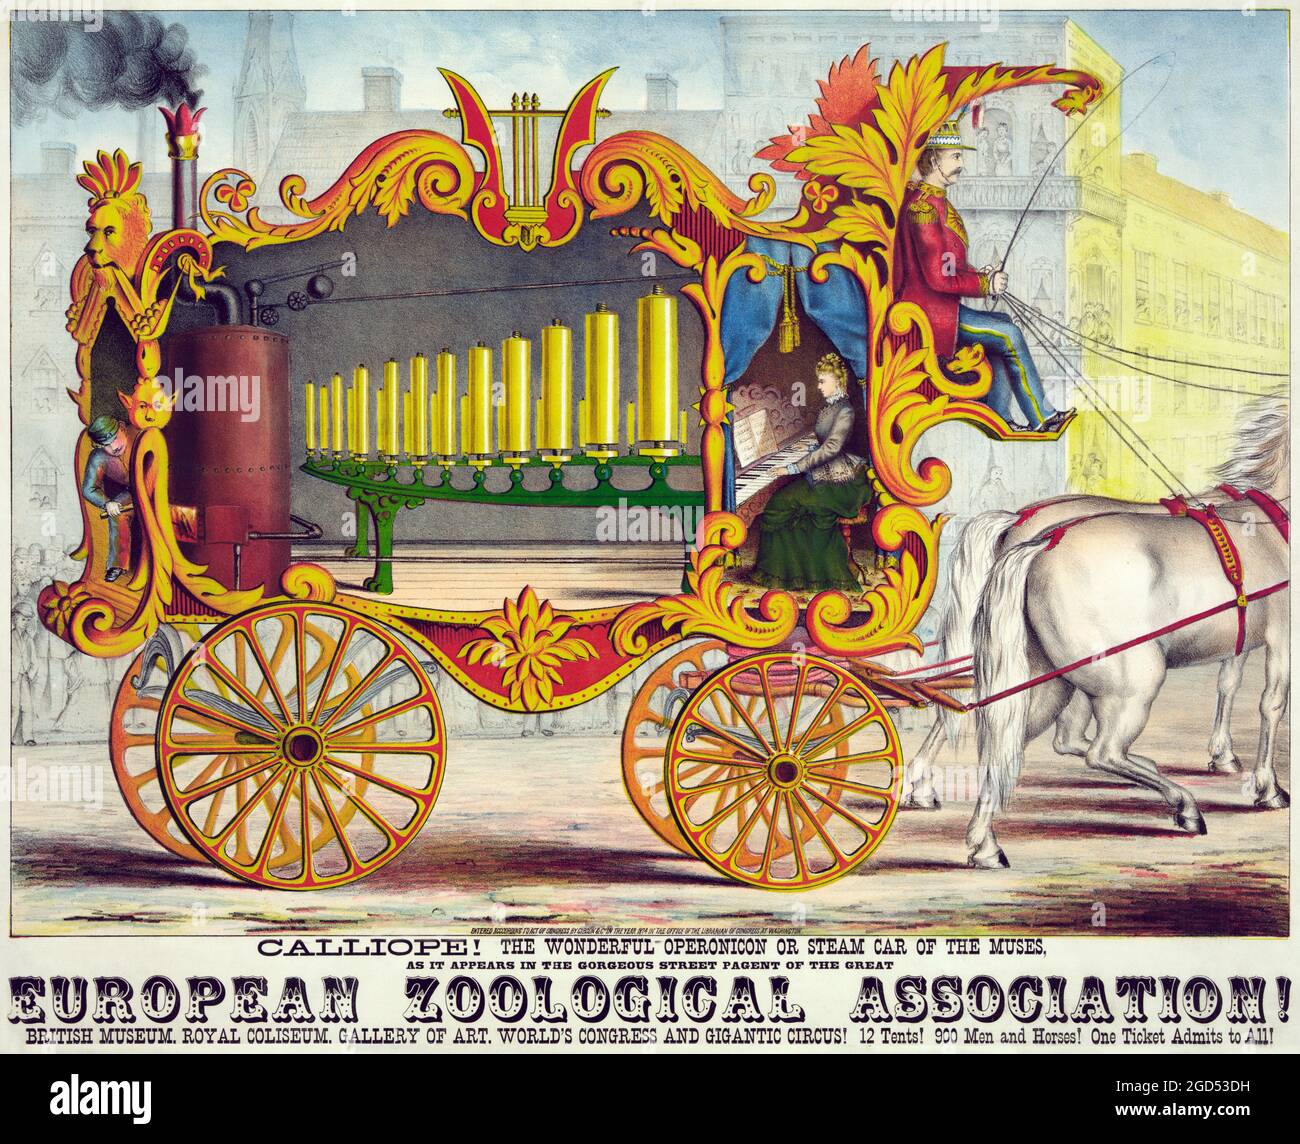 Cartel de Vintage Circus - Calliope, el maravilloso operonicon o coche de vapor de las musas, cartel publicitario, 1874. ¡ASOCIACIÓN EUROPEA DE ZOOLOGÍA! Foto de stock